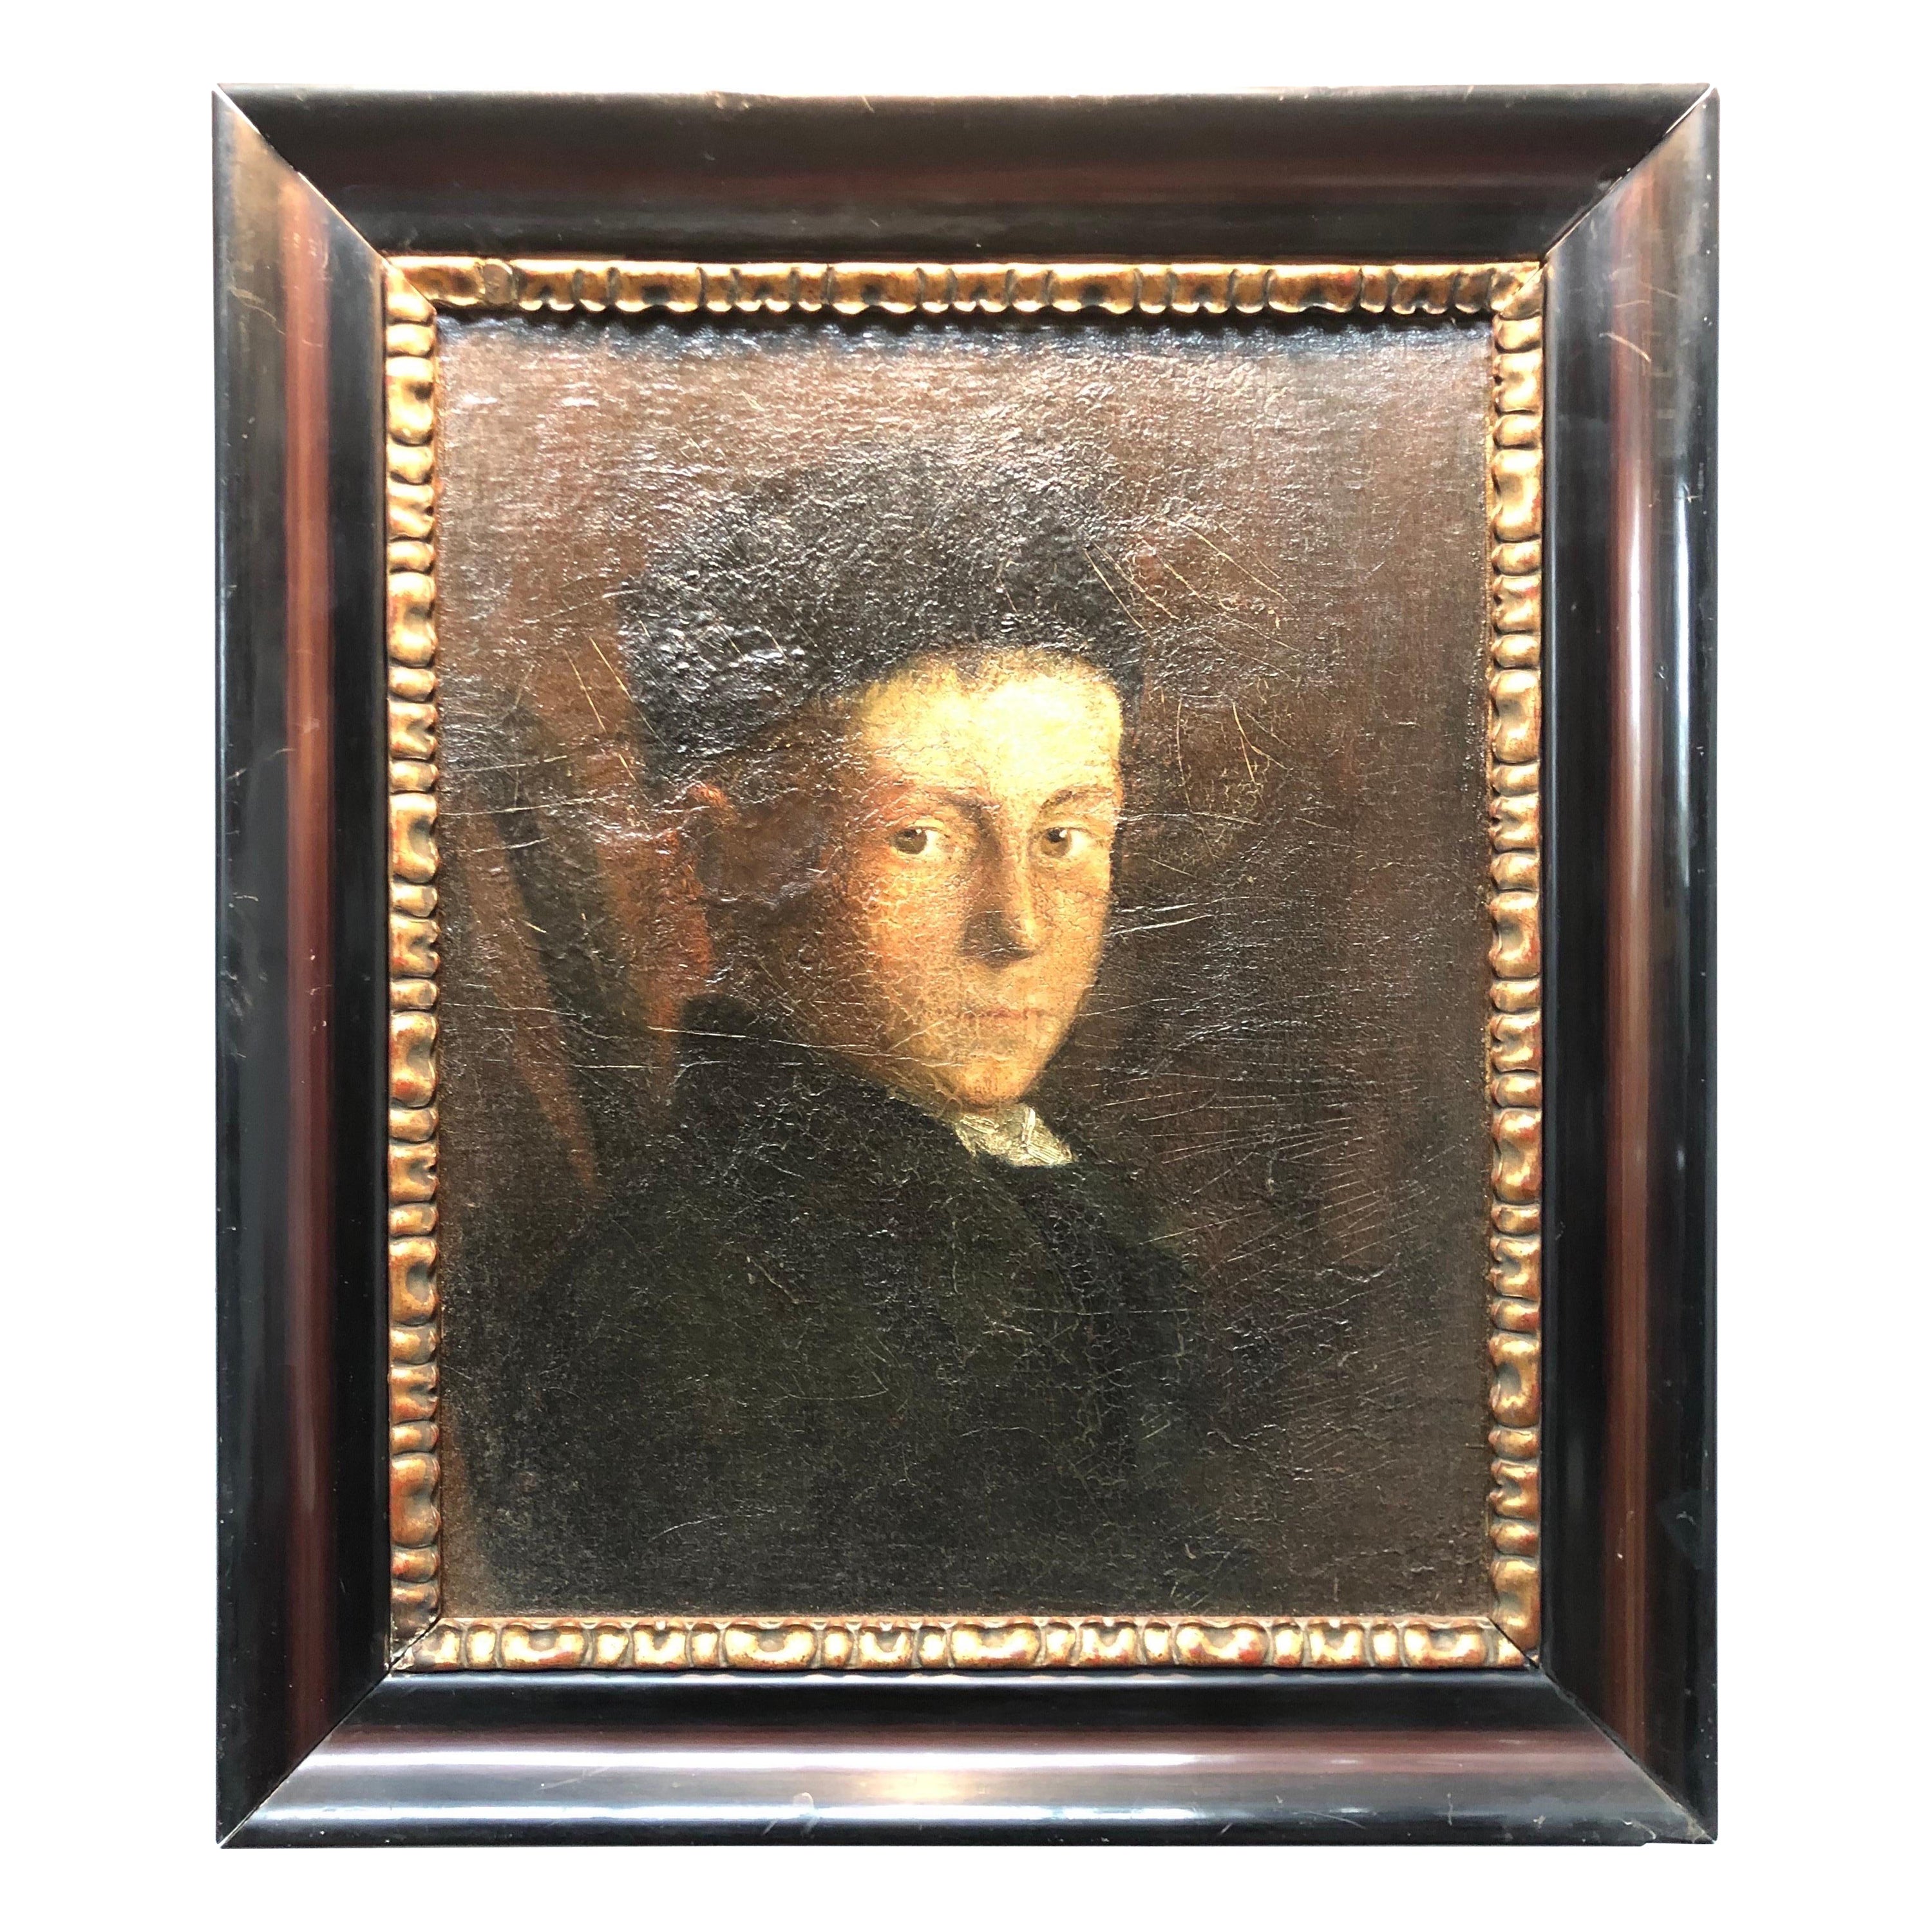 A Beautiful Antique Portrait Of.A Boy For Sale